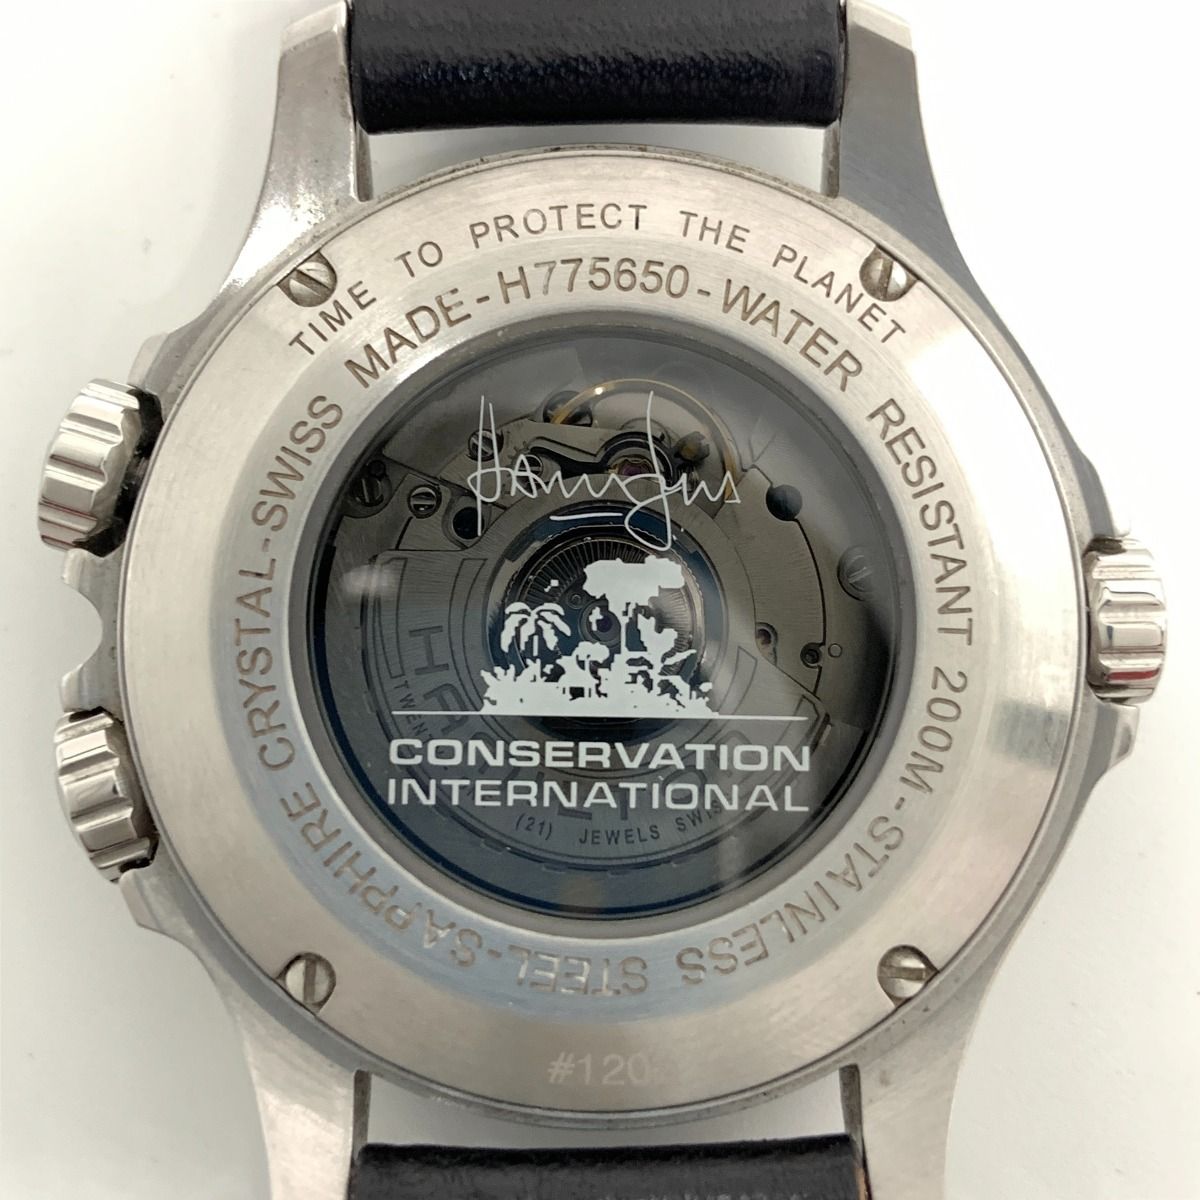 〇〇HAMILTON ハミルトン カーキ コンサベーション GMT ハリソンフォード モデル 自動巻き 腕時計 H775650 シルバー x ブラック  - メルカリ